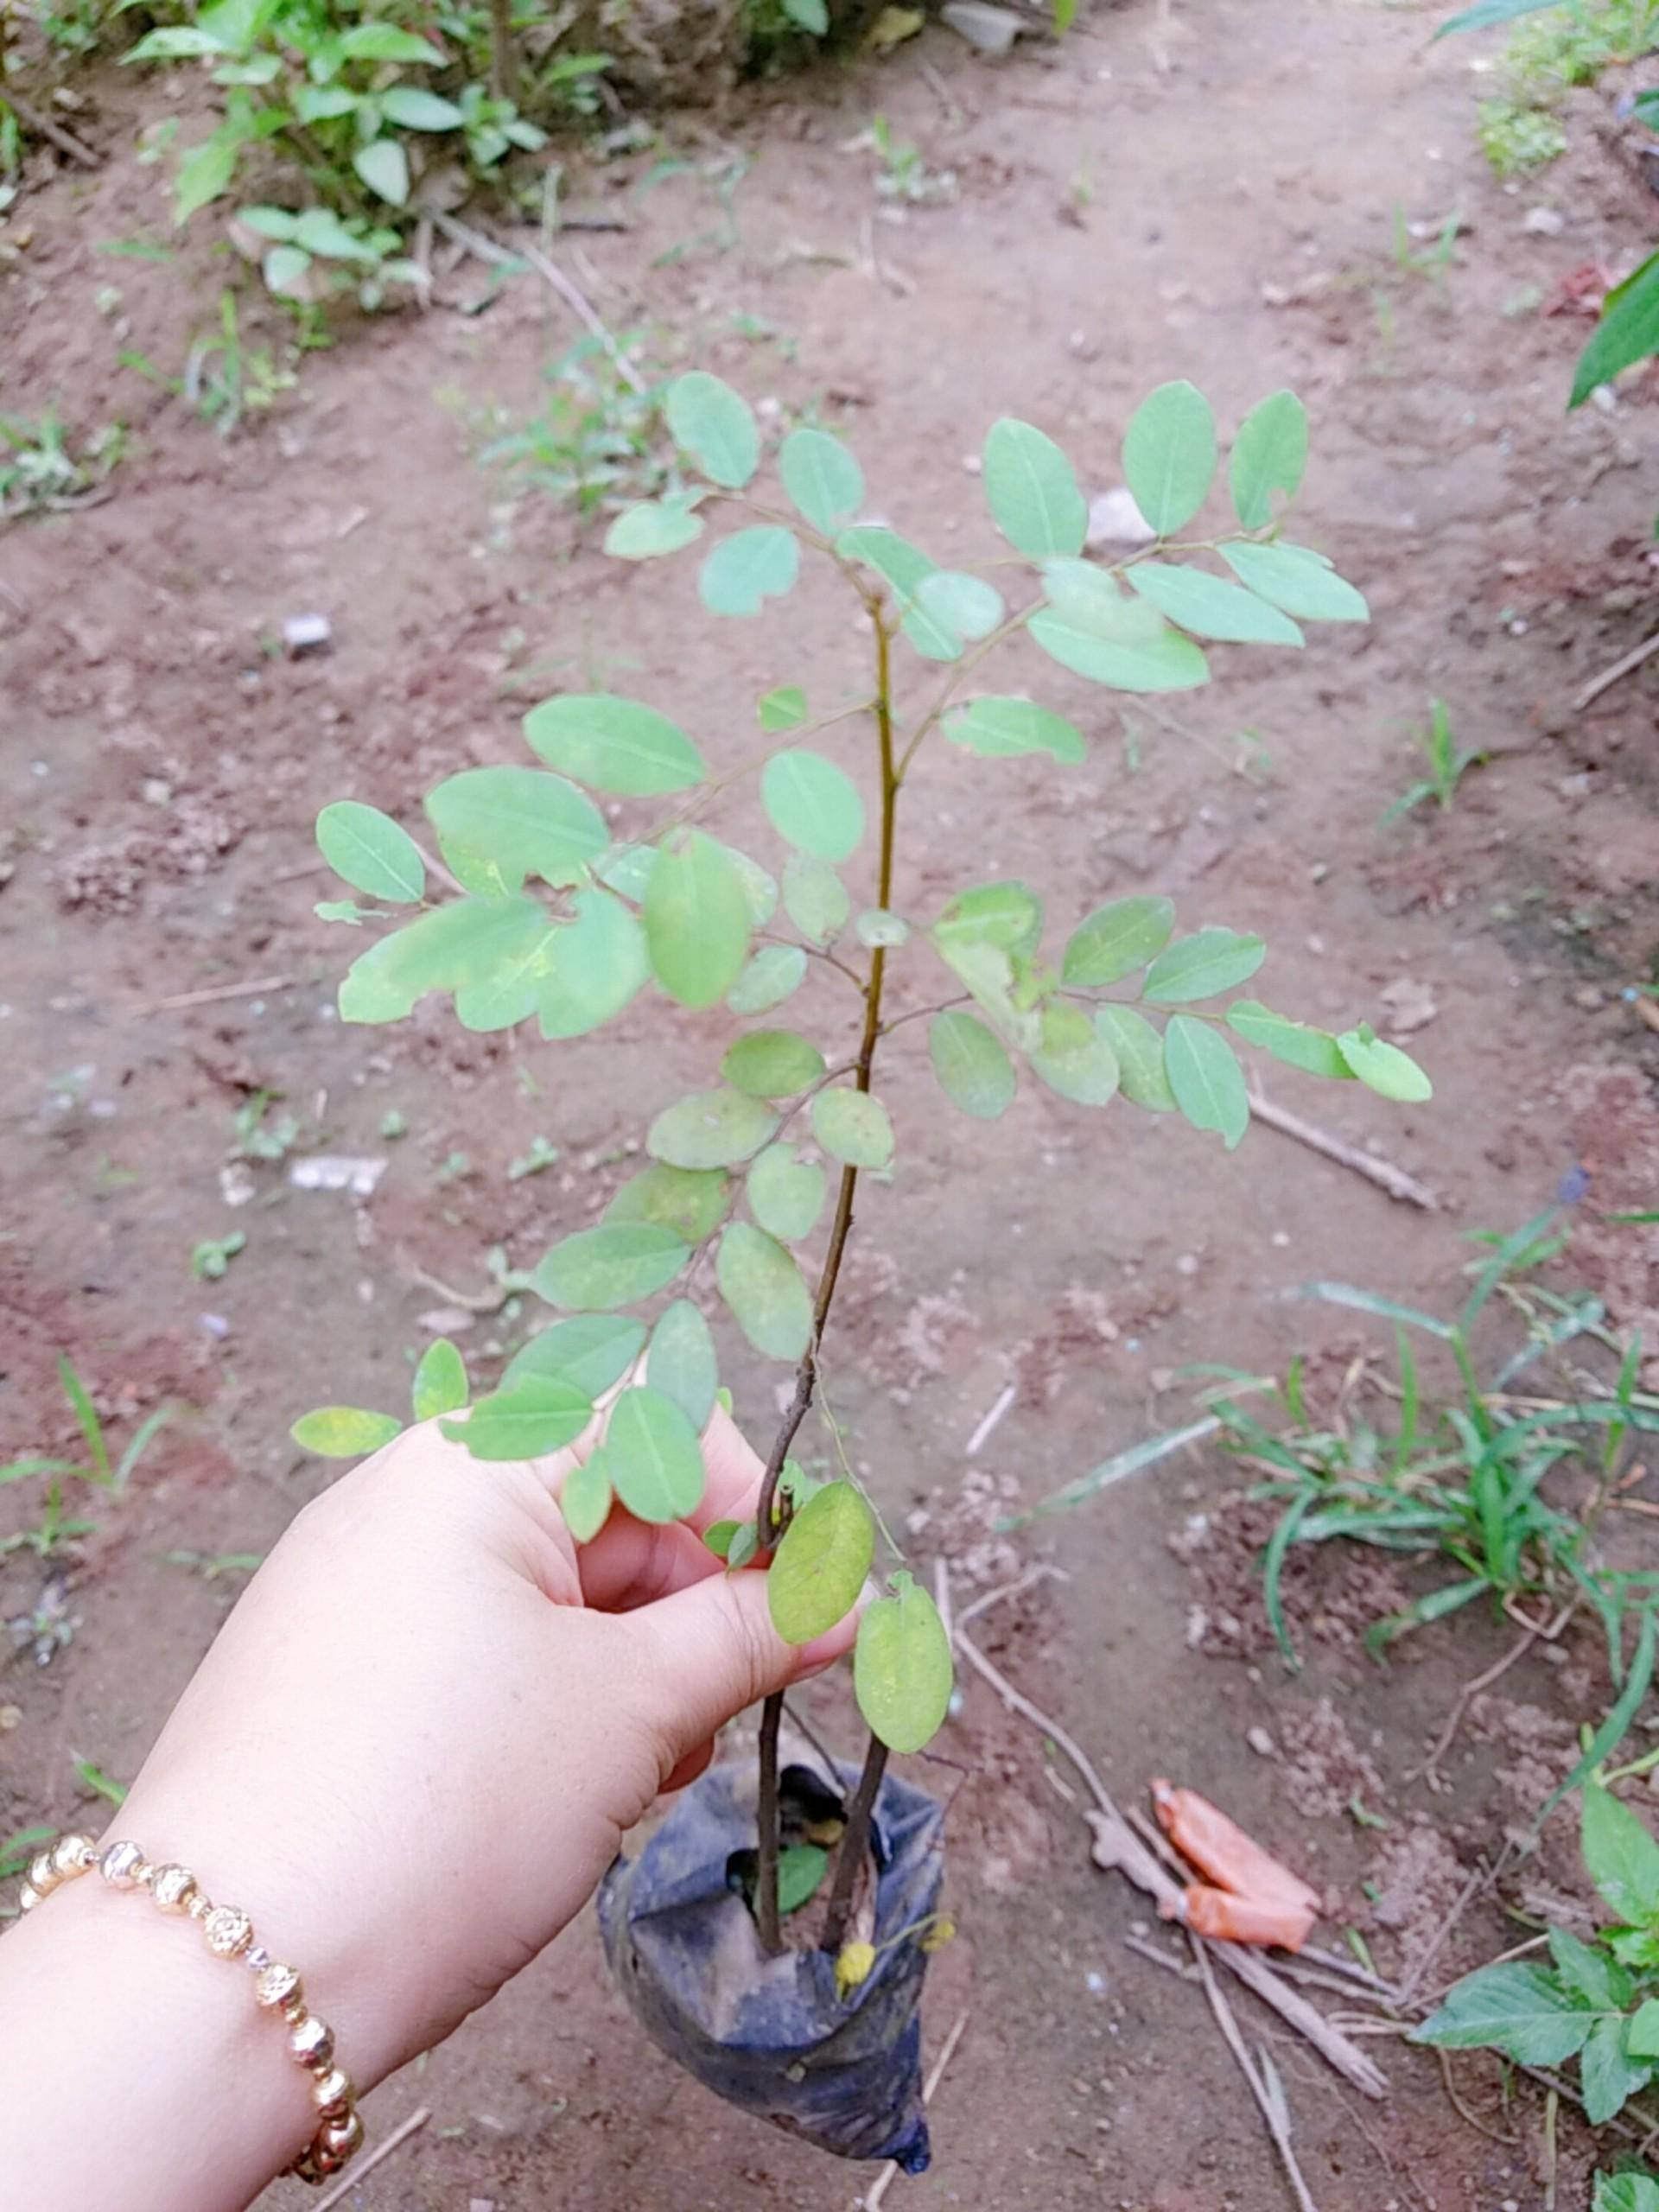 Khám phá sự đẹp độc đáo của cây phèn đen và cảm nhận rằng một loài cây nhỏ bé có thể mang lại nhiều giá trị vô giá cho cuộc sống của chúng ta.